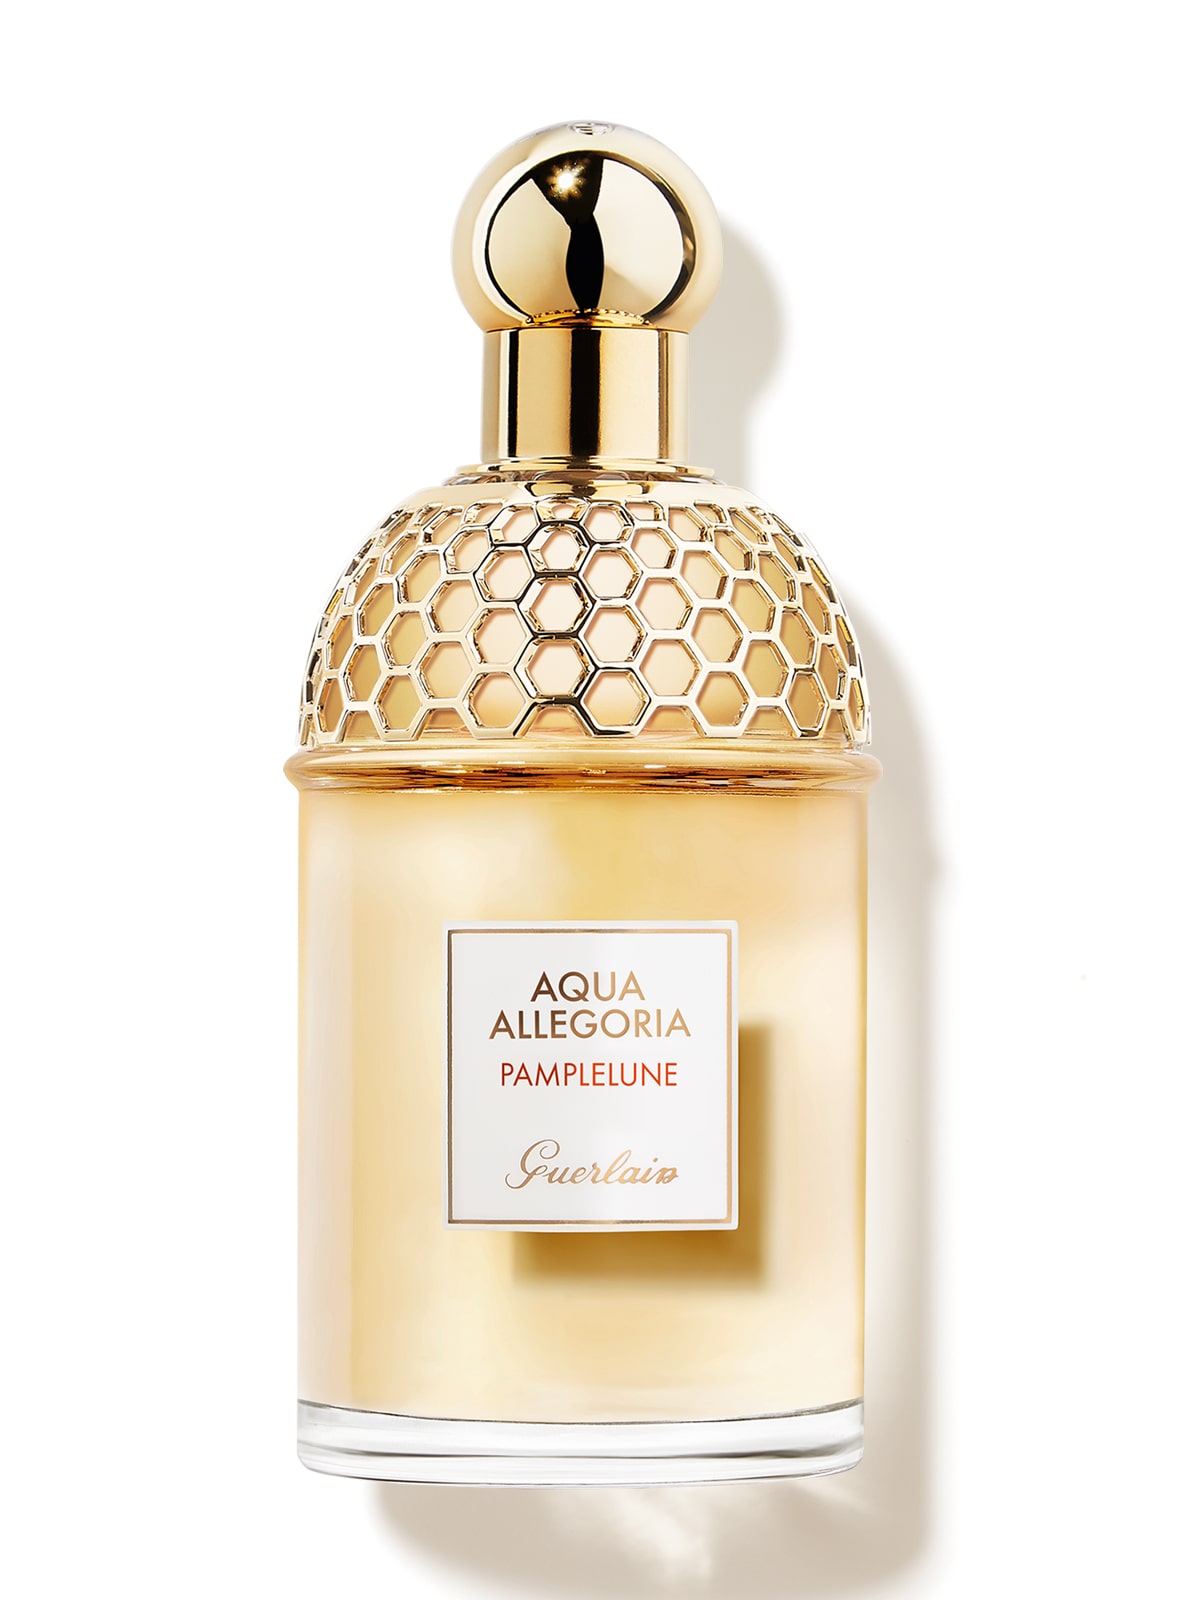 Guerlain Aqua Allegoria Pamplelune Grapefruit EDT Perfume for Women by Guerlain